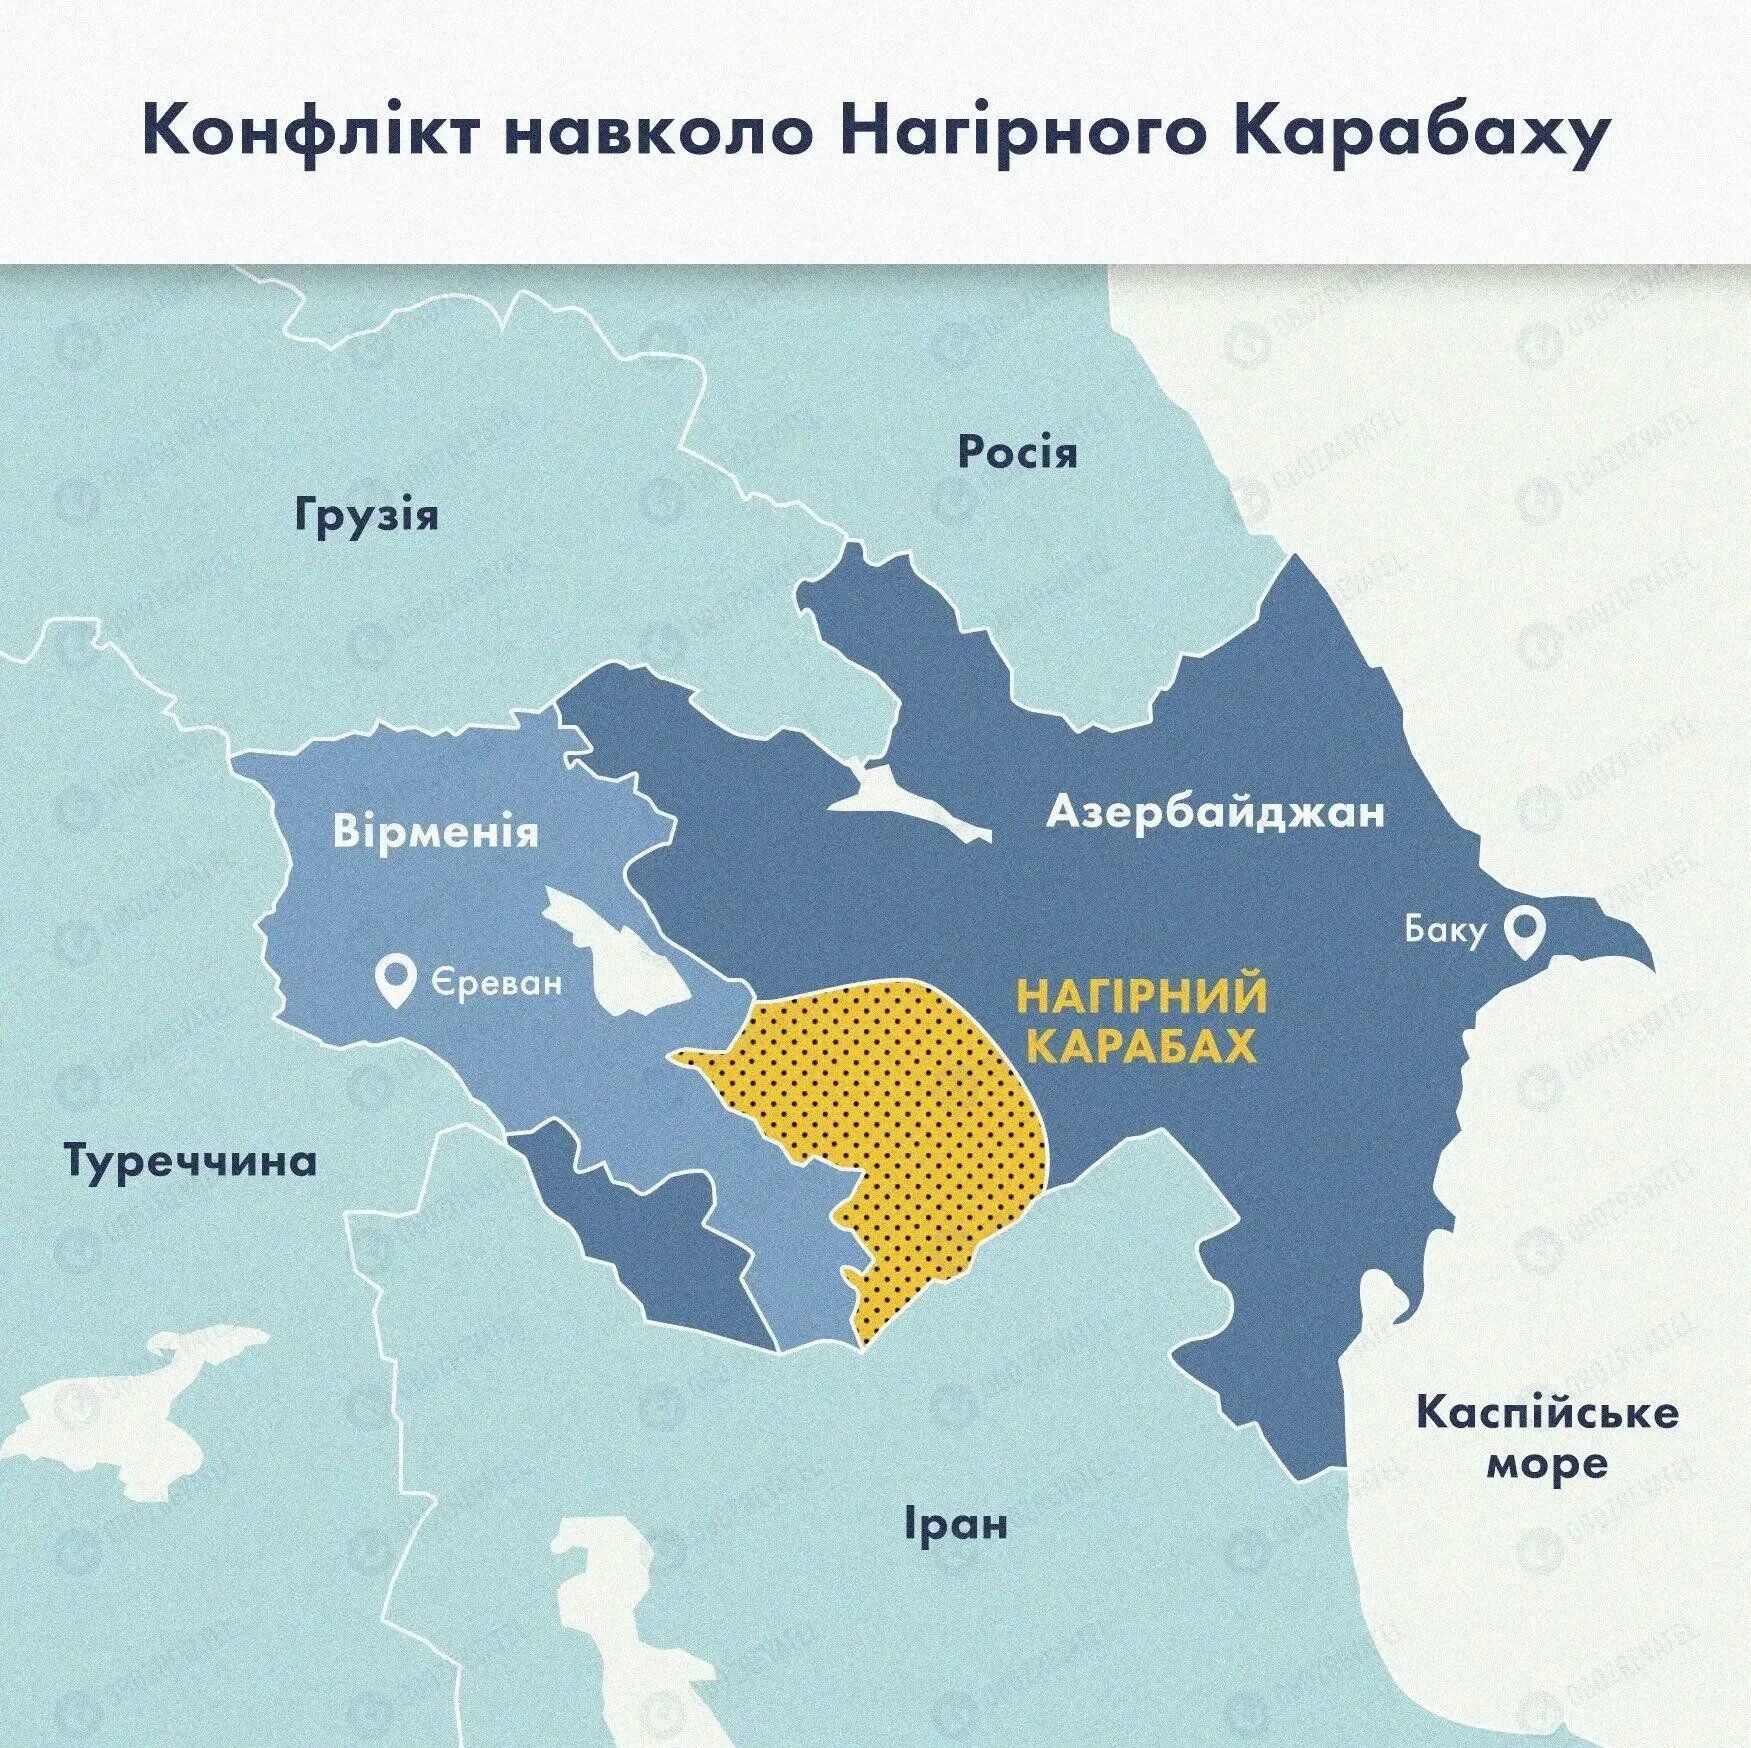 Карта по конфликту в Нагорном Карабахе